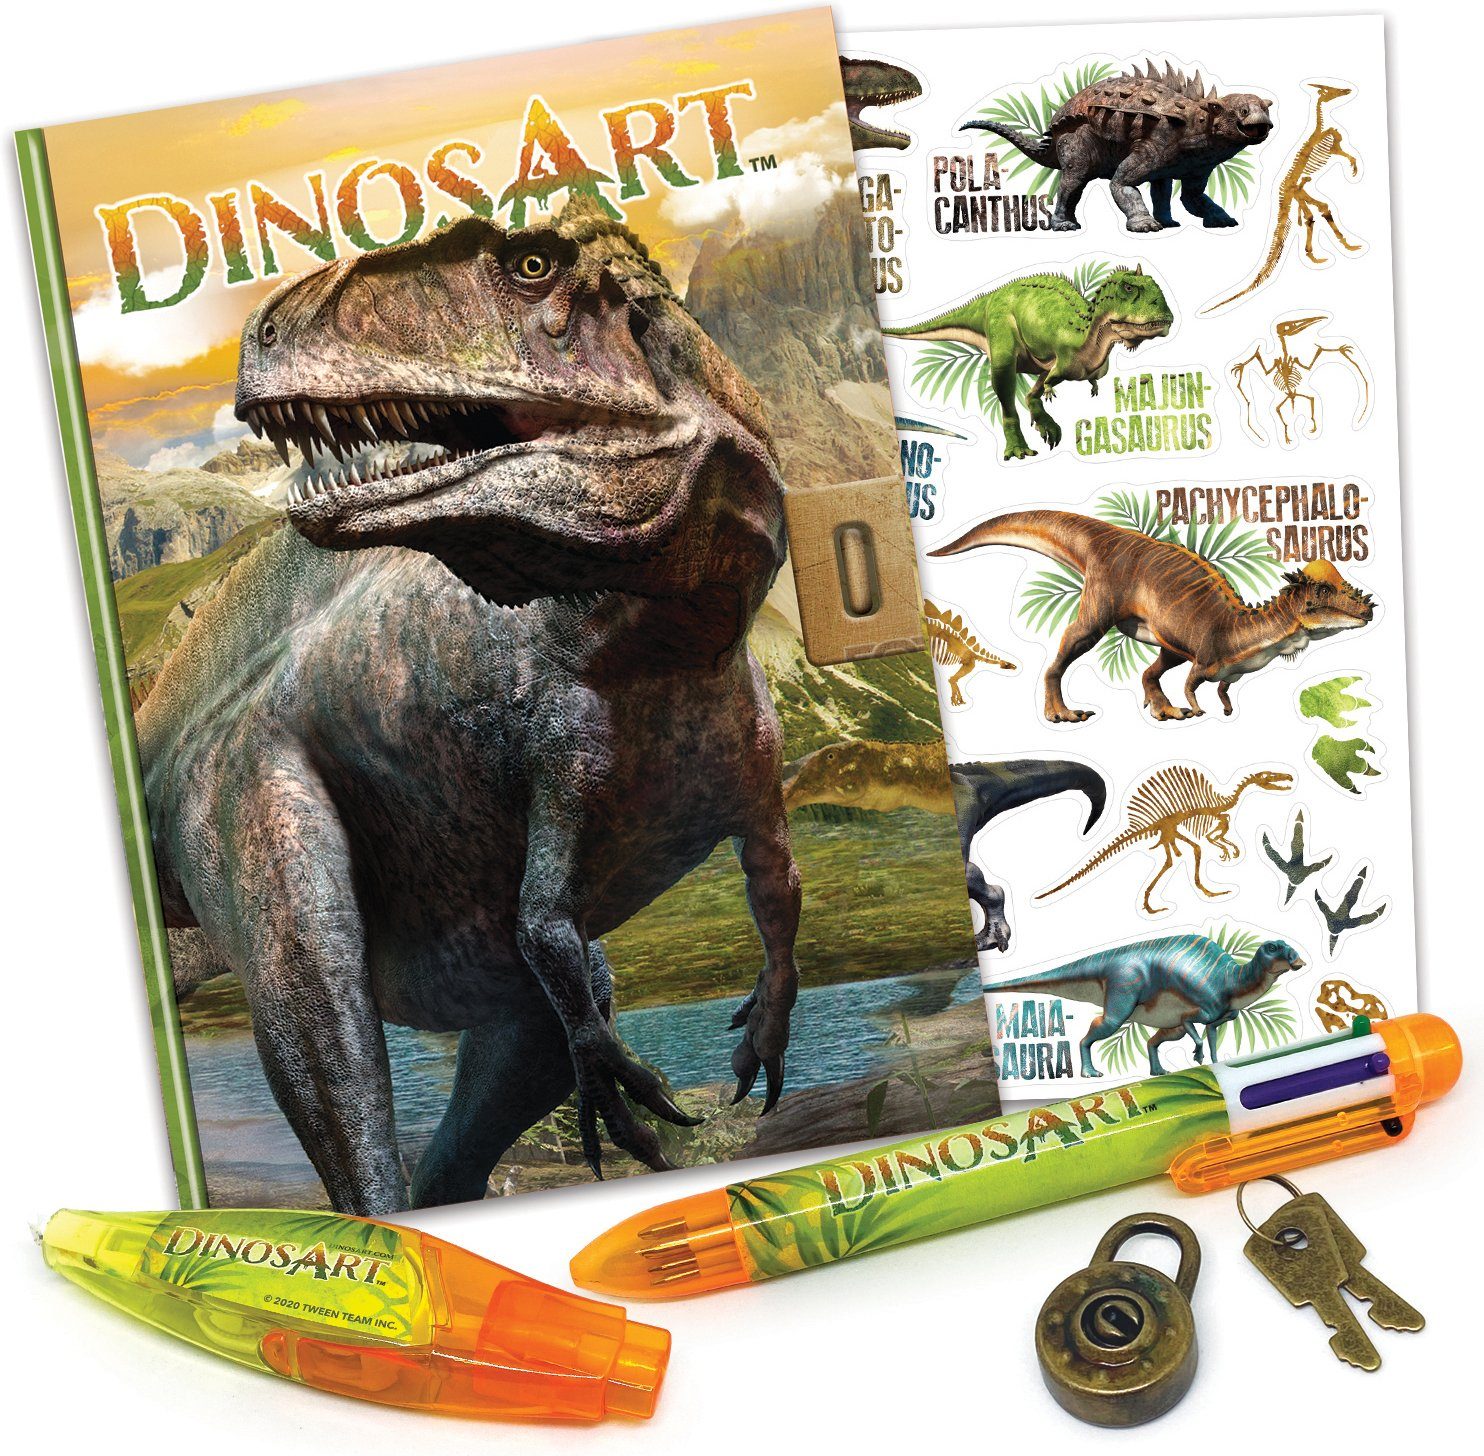 Tagebuch Dinos Dinos Art Art, Tagebuch Dinos geheimes